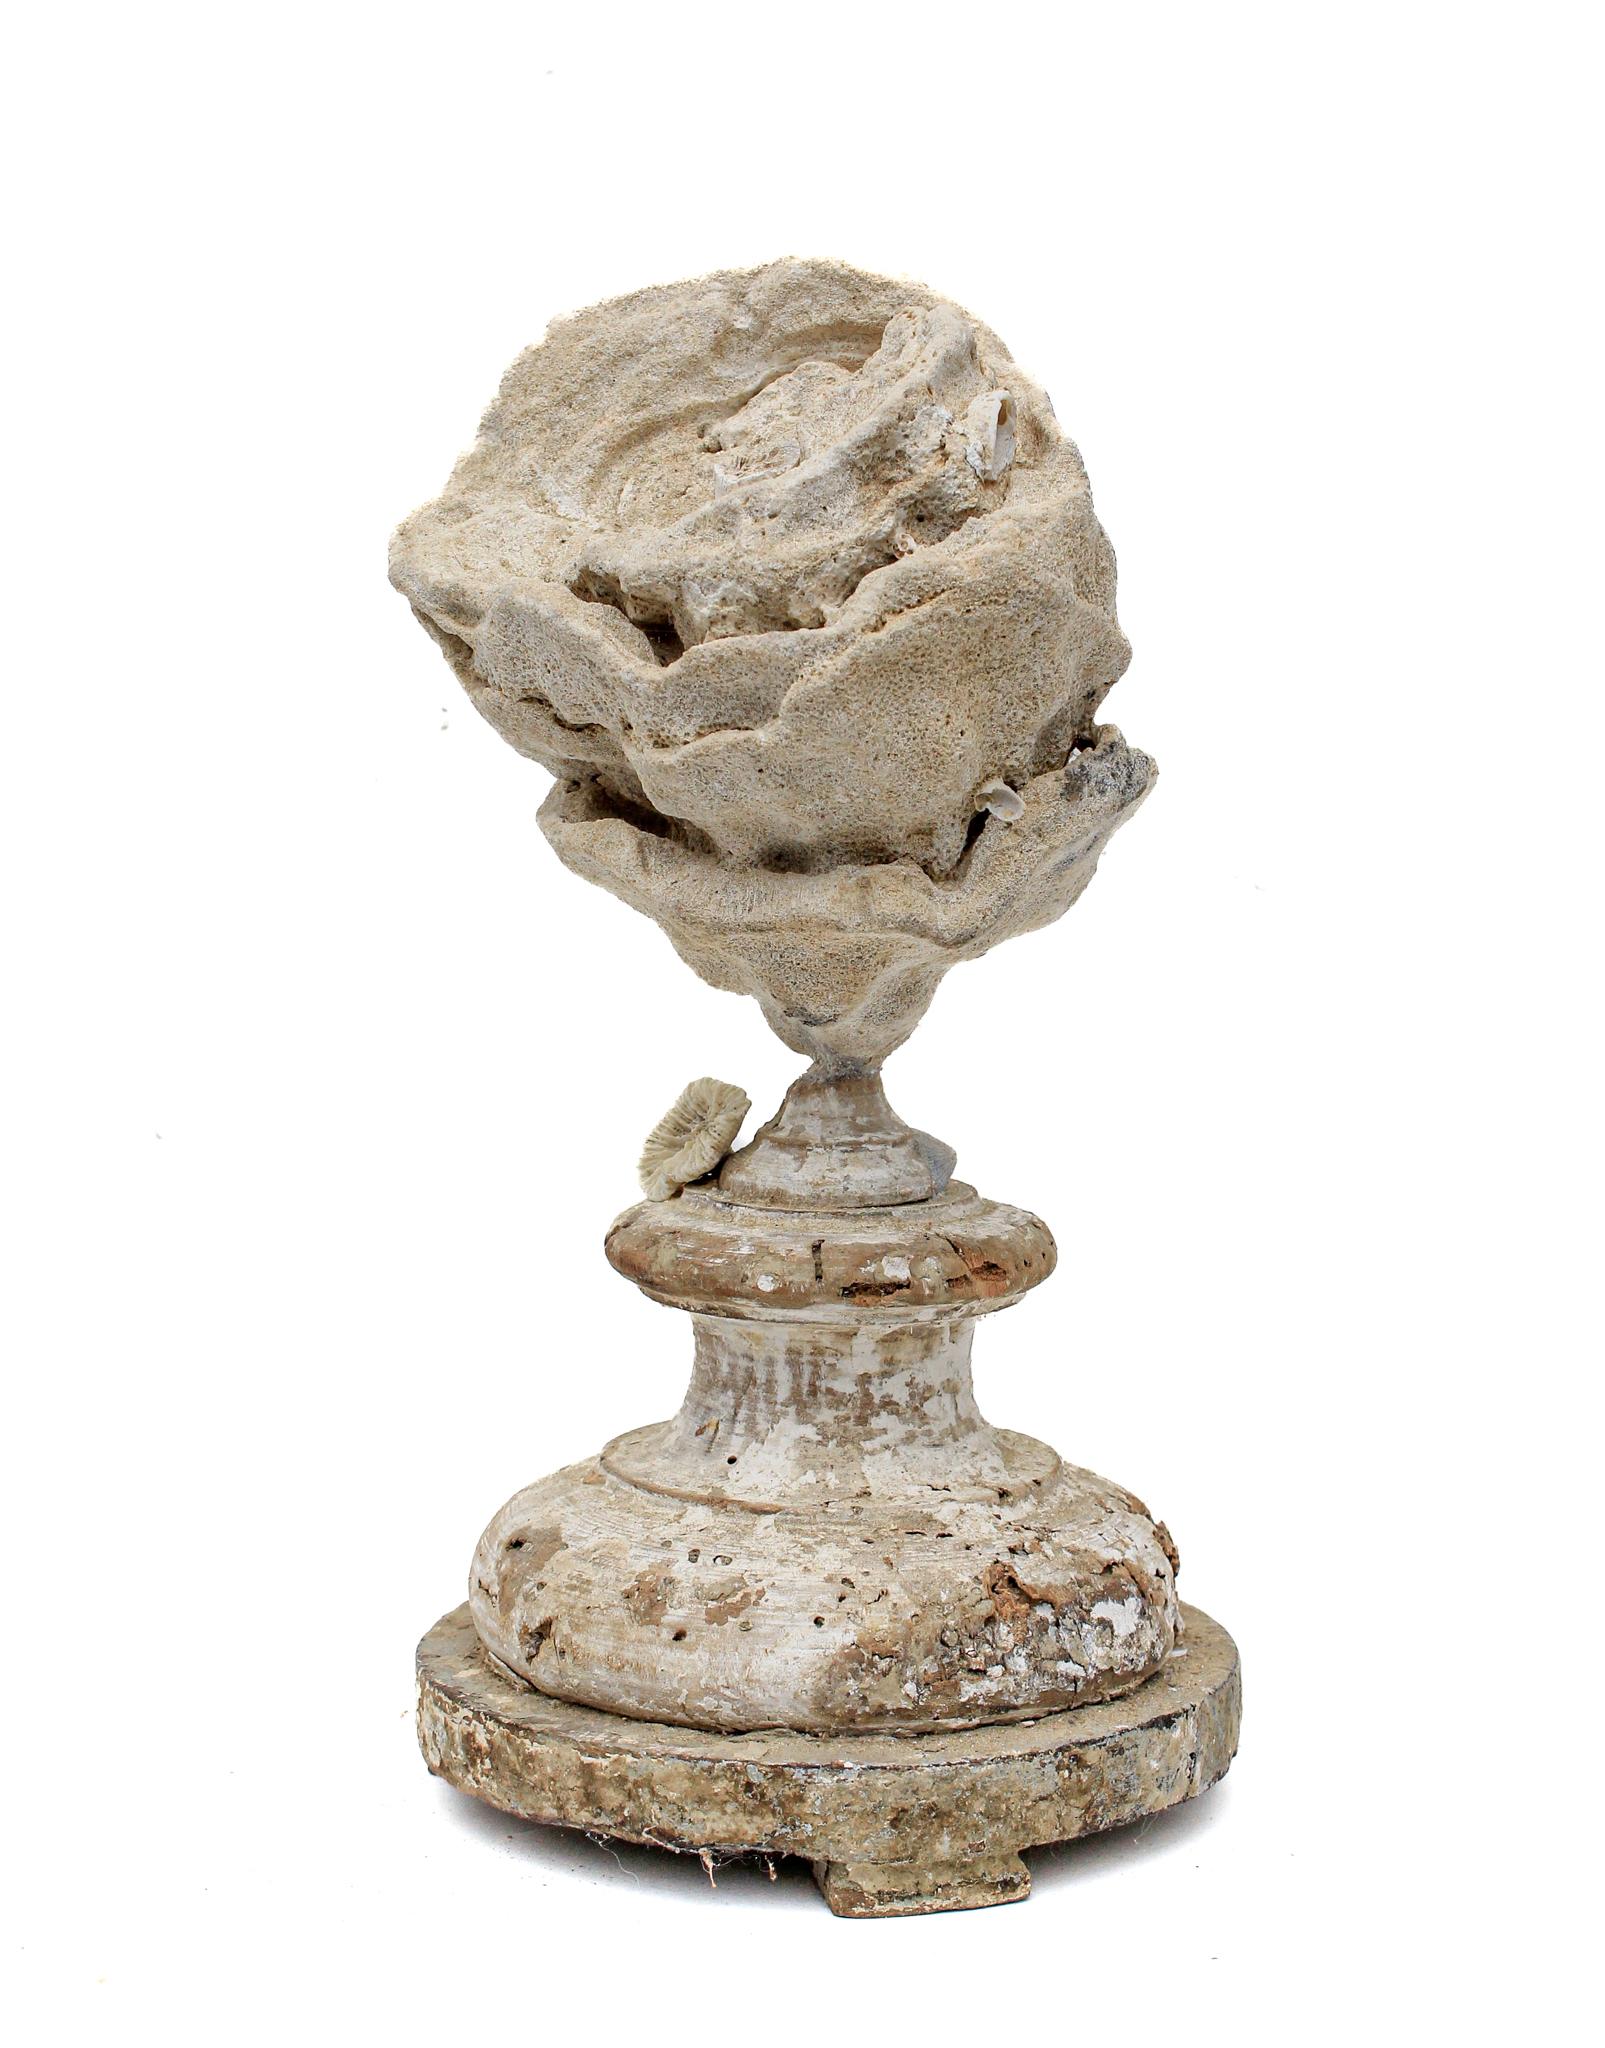 italienisches Fragment aus dem 17. Jahrhundert, das mit einem großen Stromatolithen und einer fossilen Rosenkoralle verziert ist.

Dieses Fragment stammt aus einer Kirche in Florenz. Es wurde gefunden und vor dem historischen Hochwasser des Arno